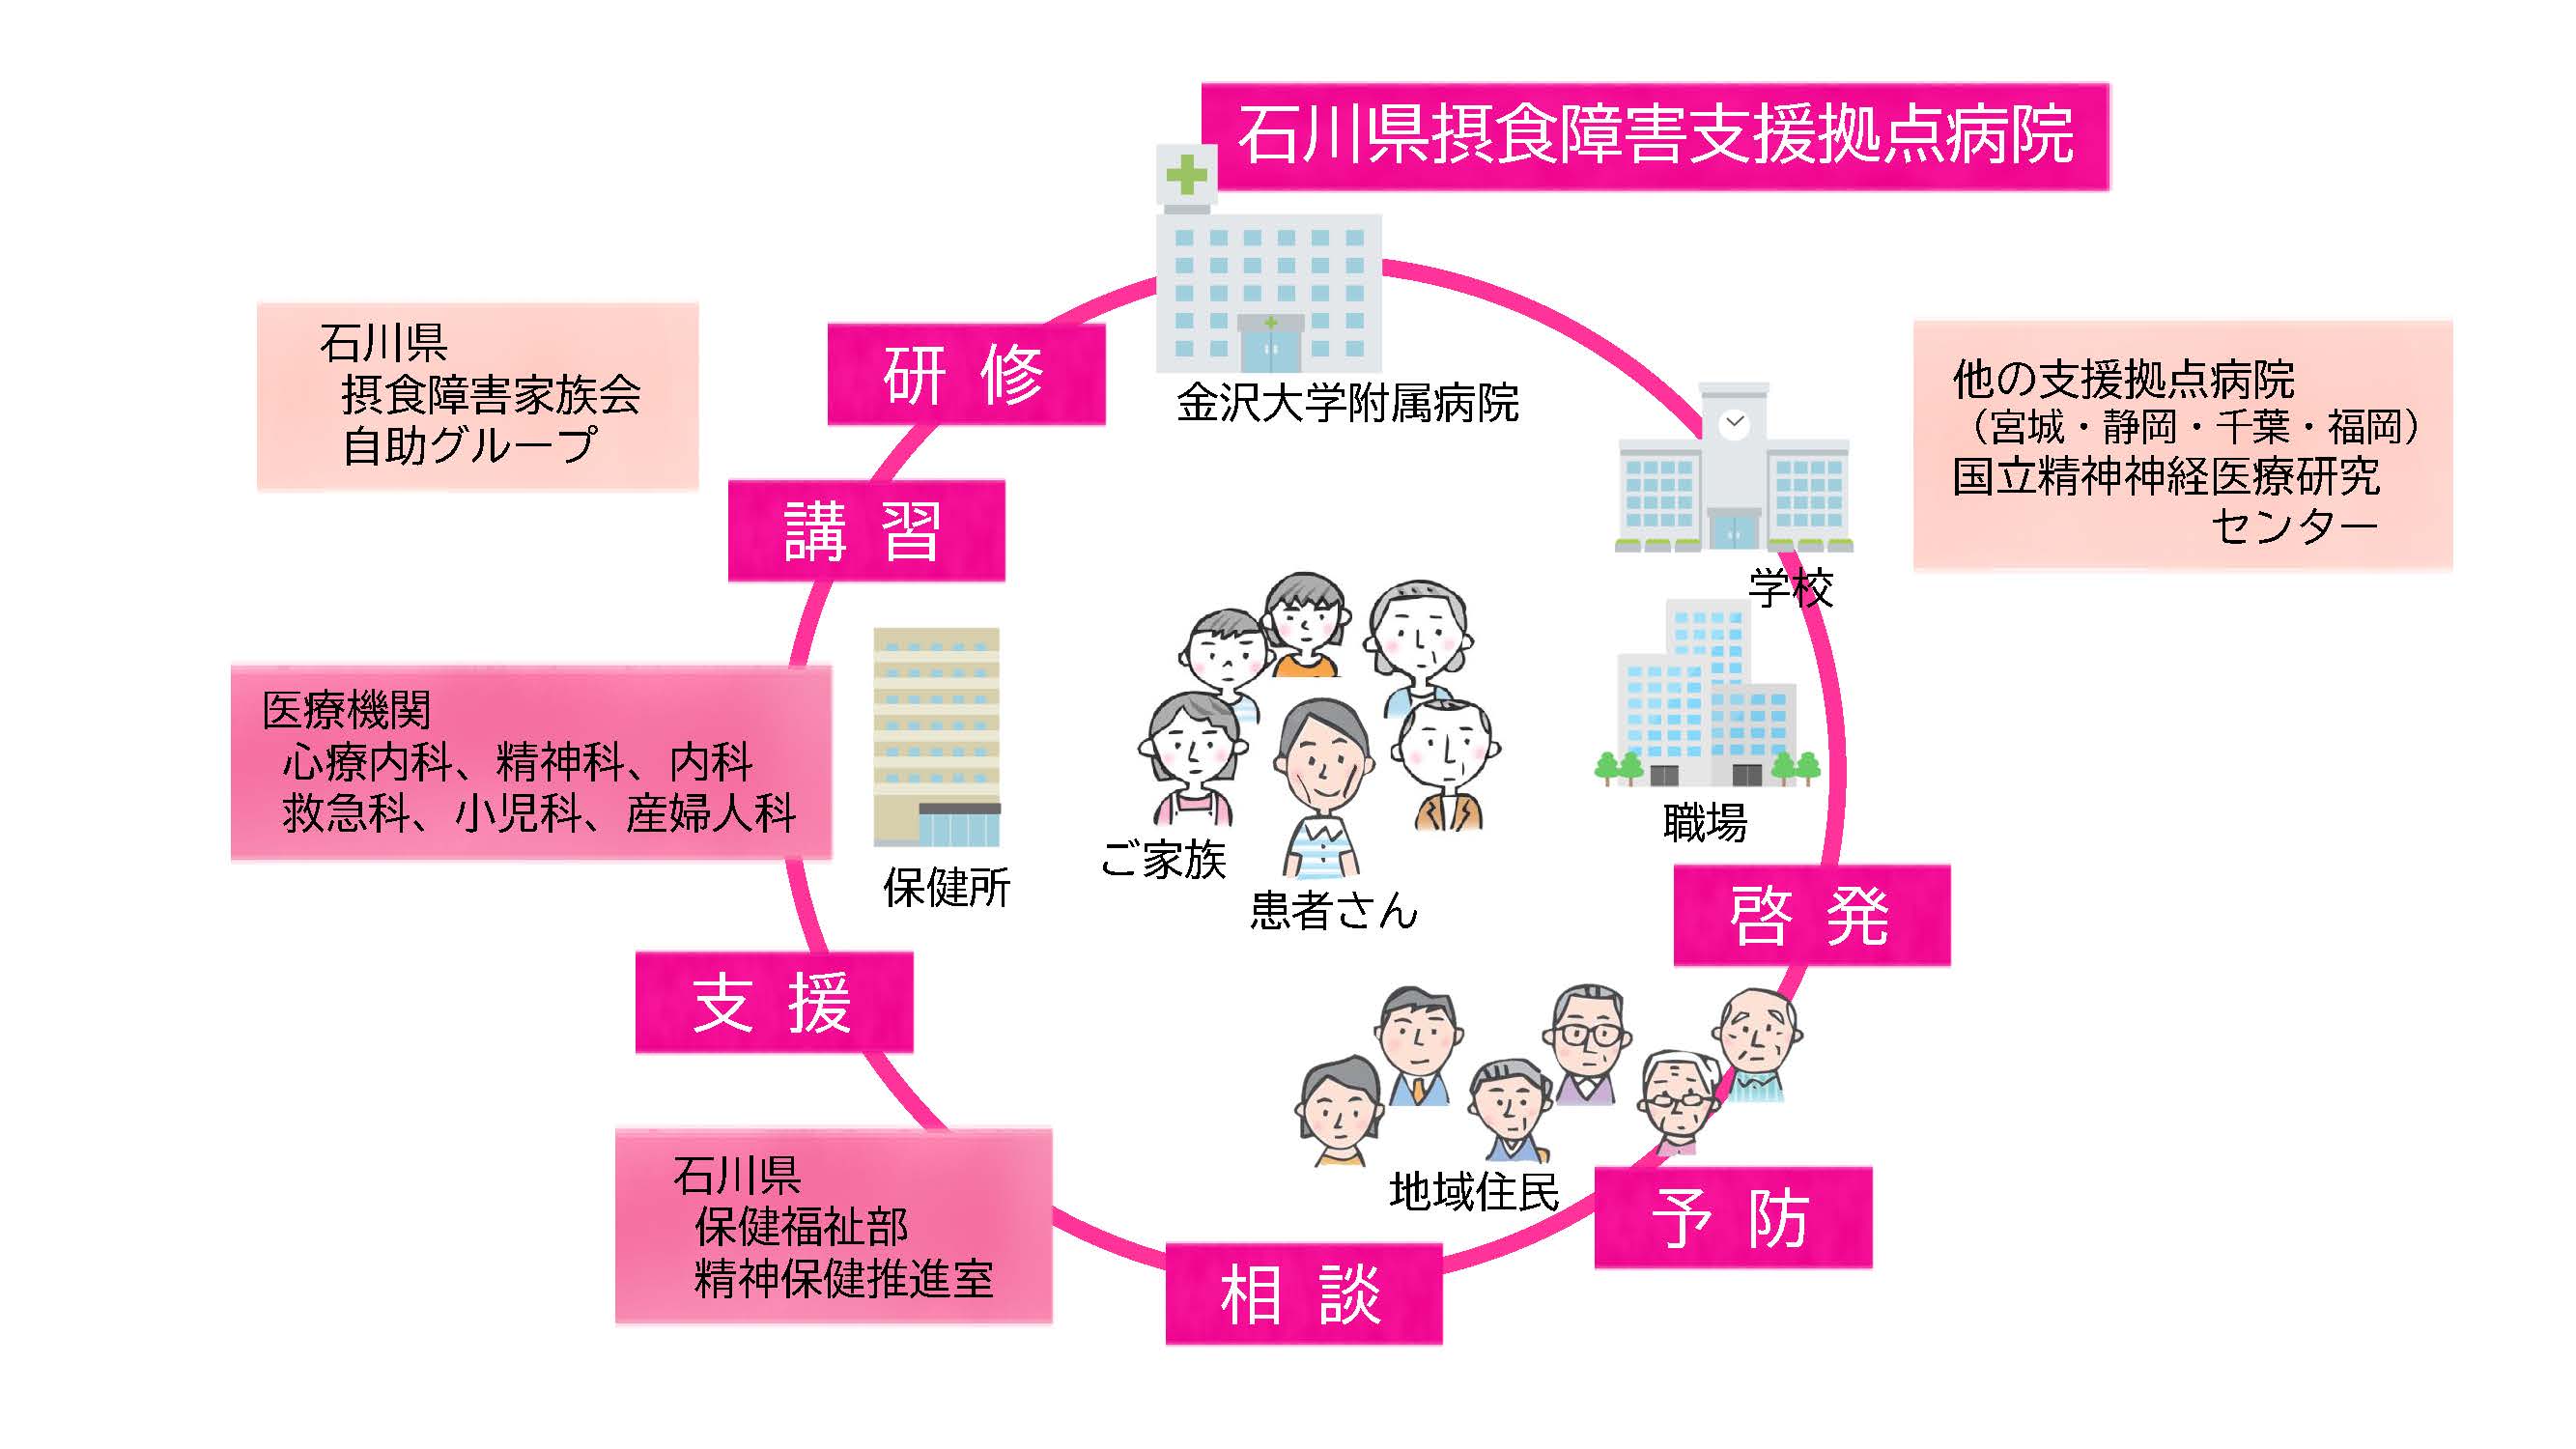 石川県摂食障害支援拠点病院におけるネットワークの概念図